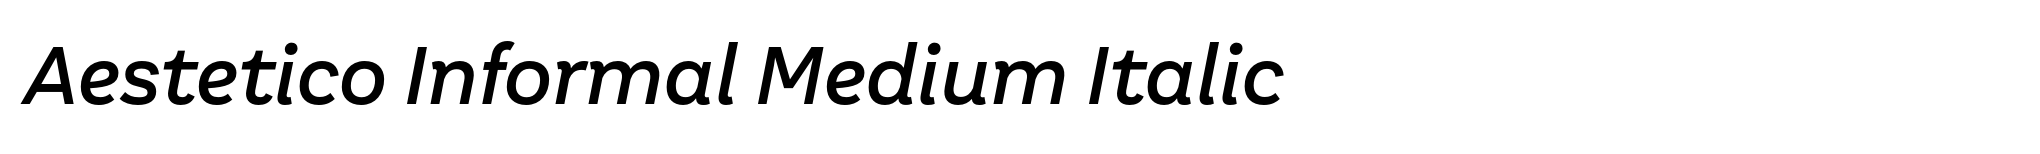 Aestetico Informal Medium Italic image